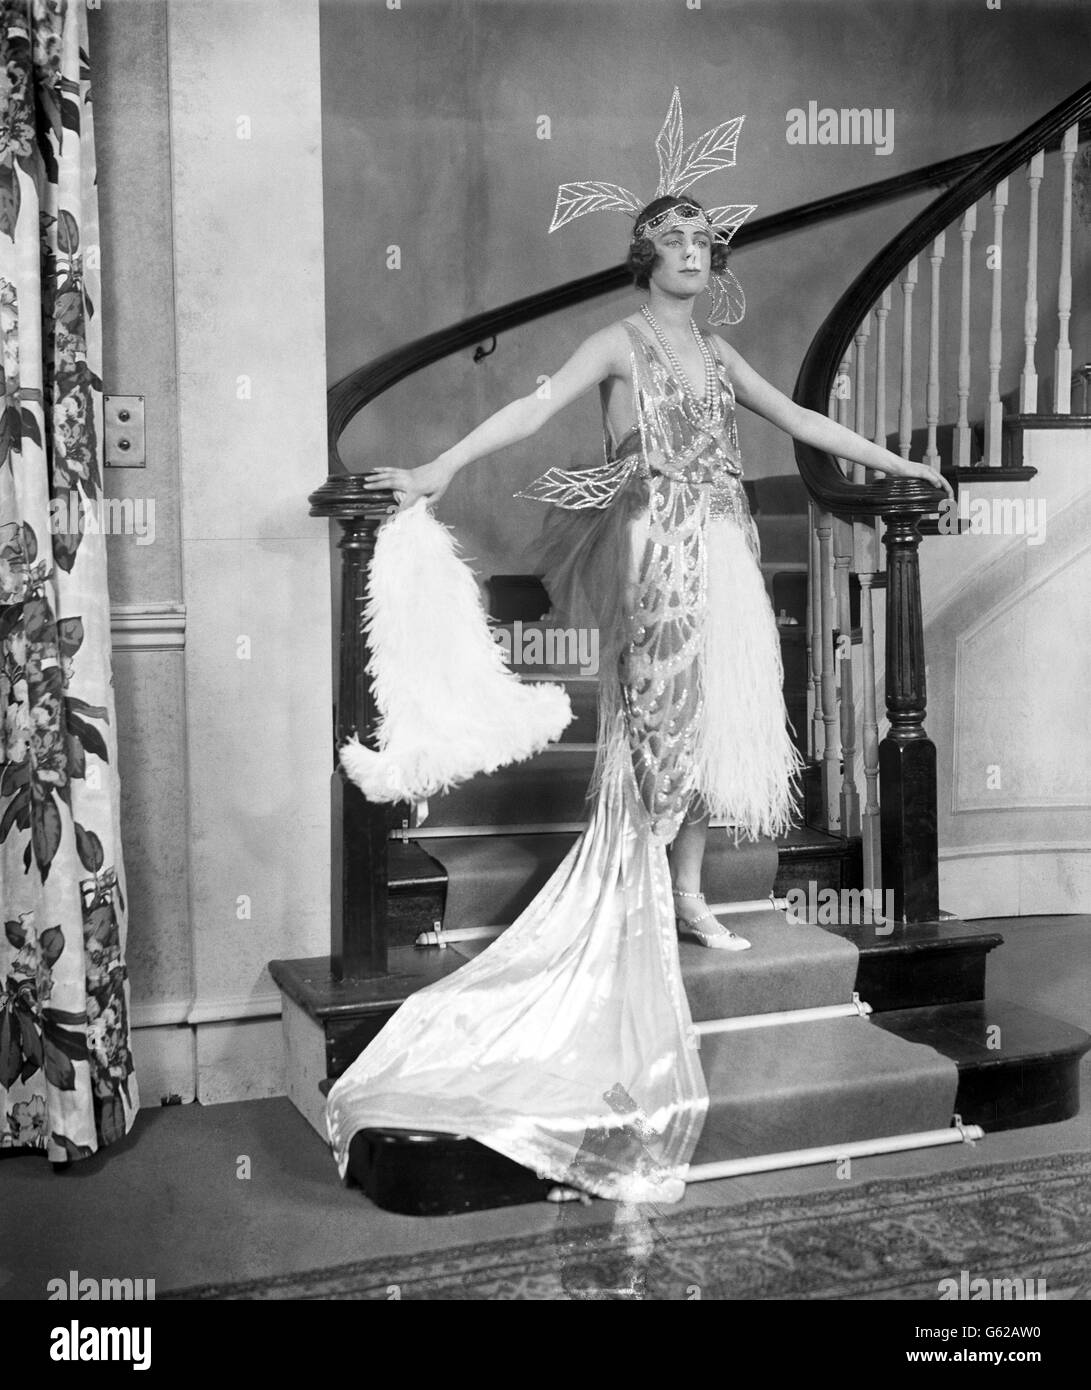 L'actrice Edna Best dans le rôle de titre de 'Polly avec un passé', qui sera joué au St James Theatre, Londres. Banque D'Images